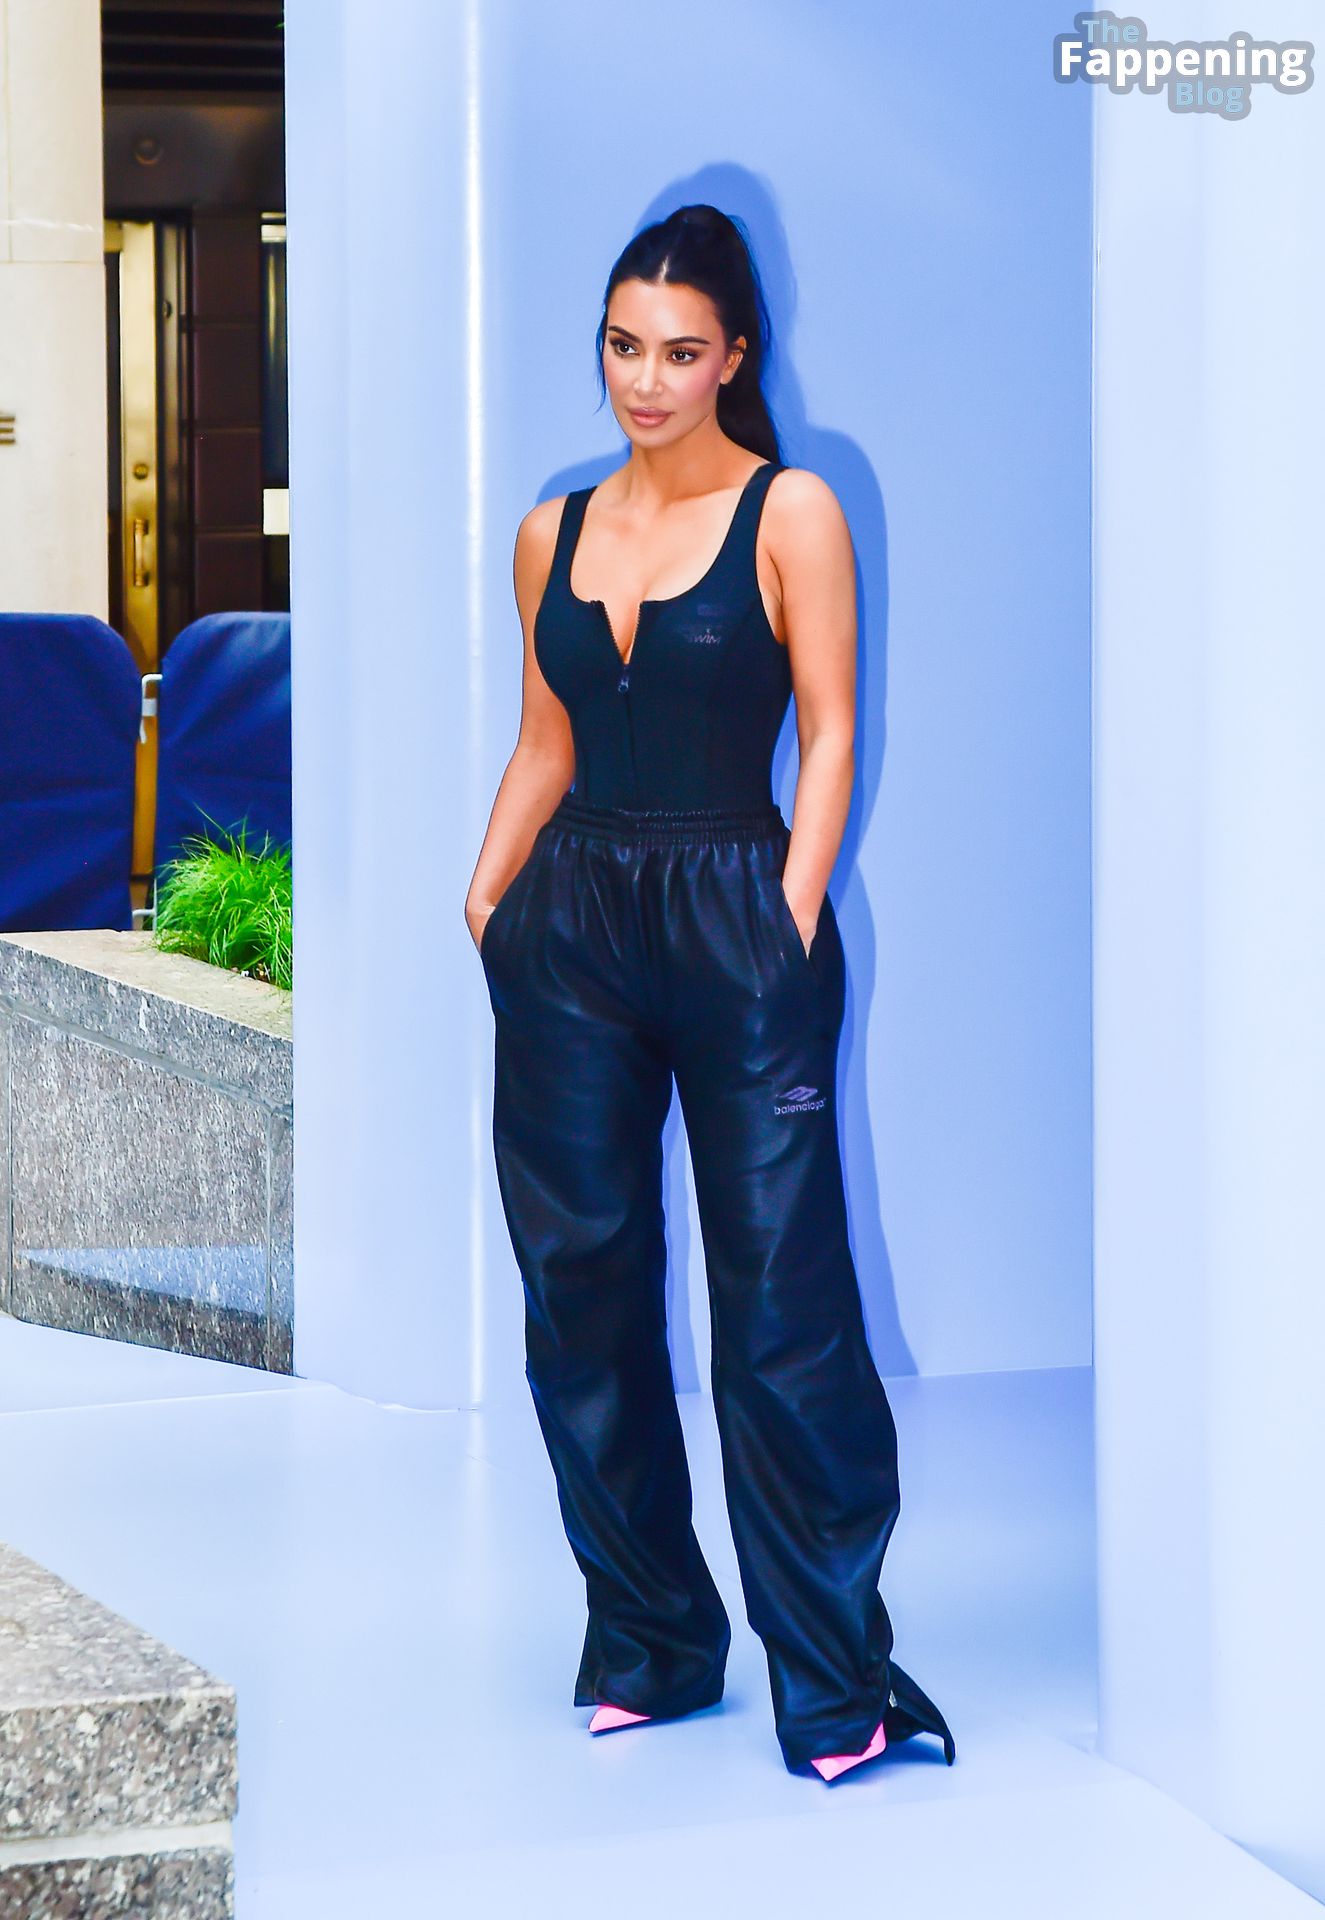 Kim-Kardashian-Sexy-The-Fappening-Blog-91-1.jpg